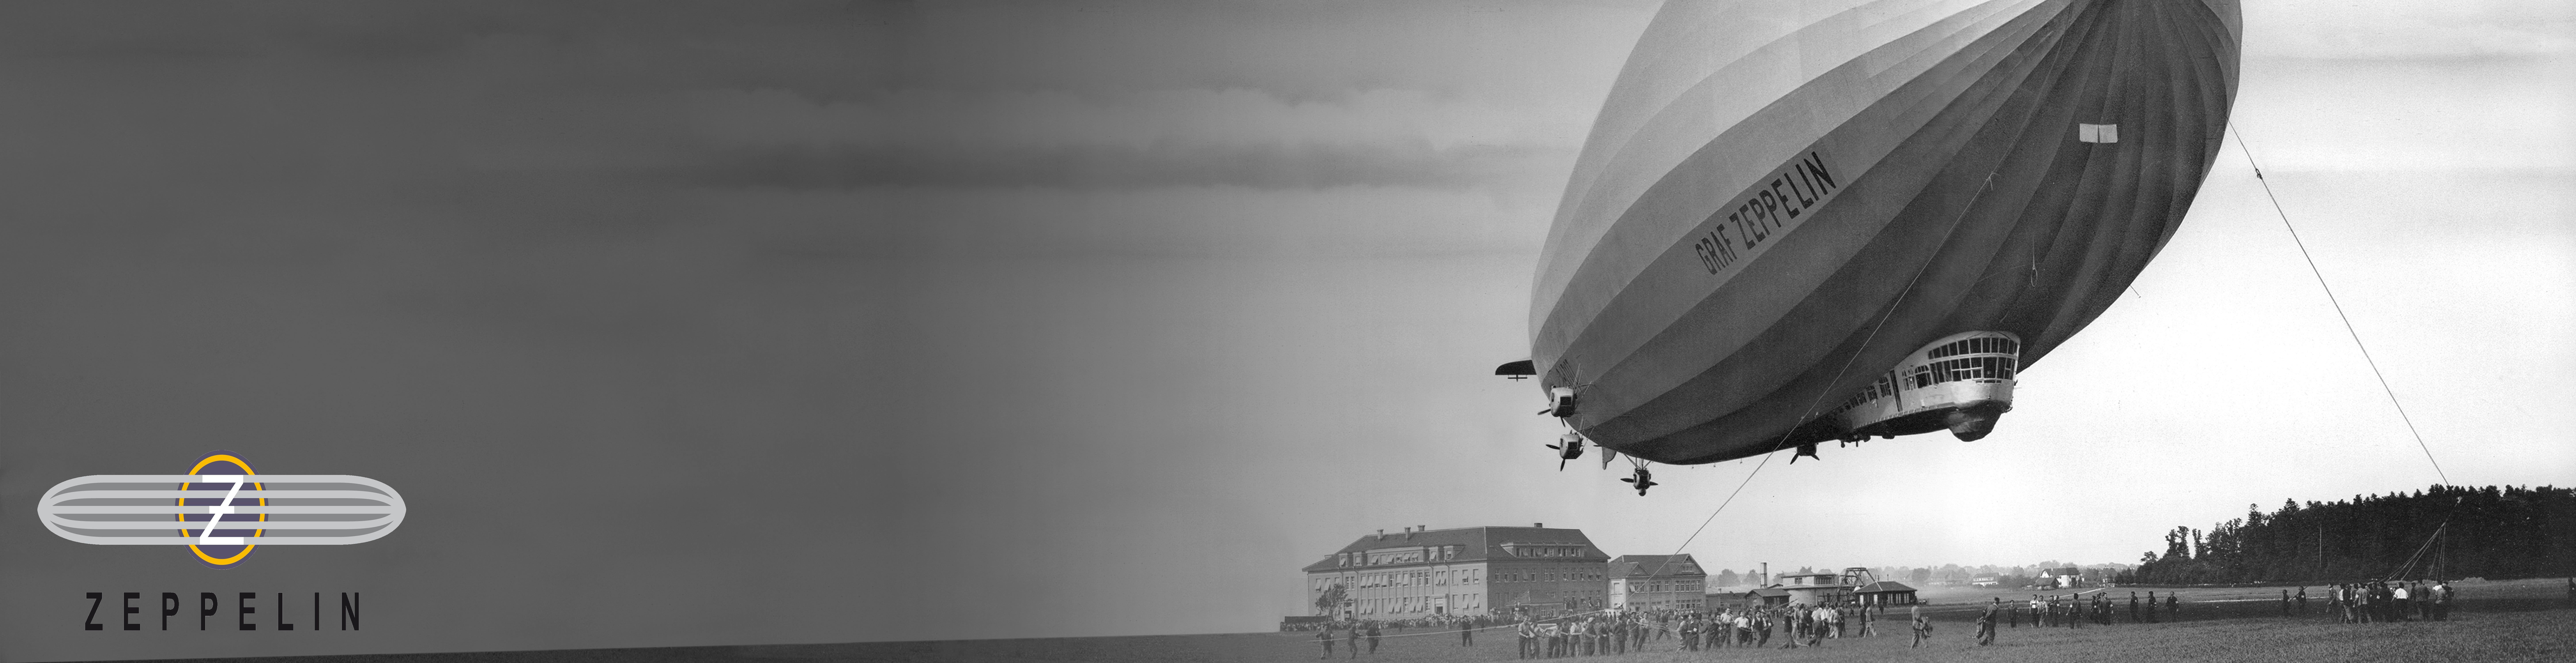 100 años Zeppelin